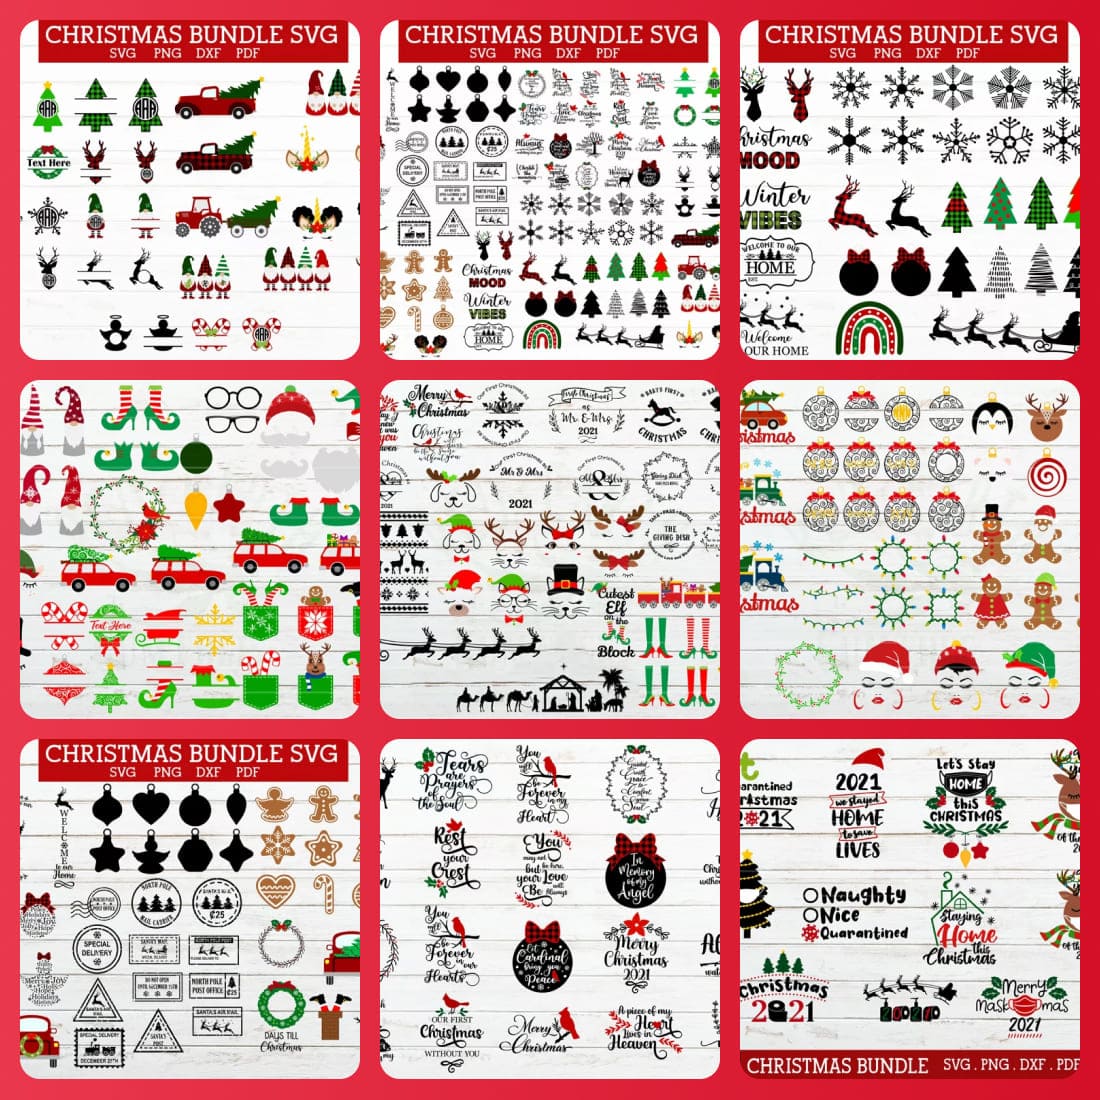 The BIG Christmas SVG bundle 420 designs,arabesque,gnome svg cover image.